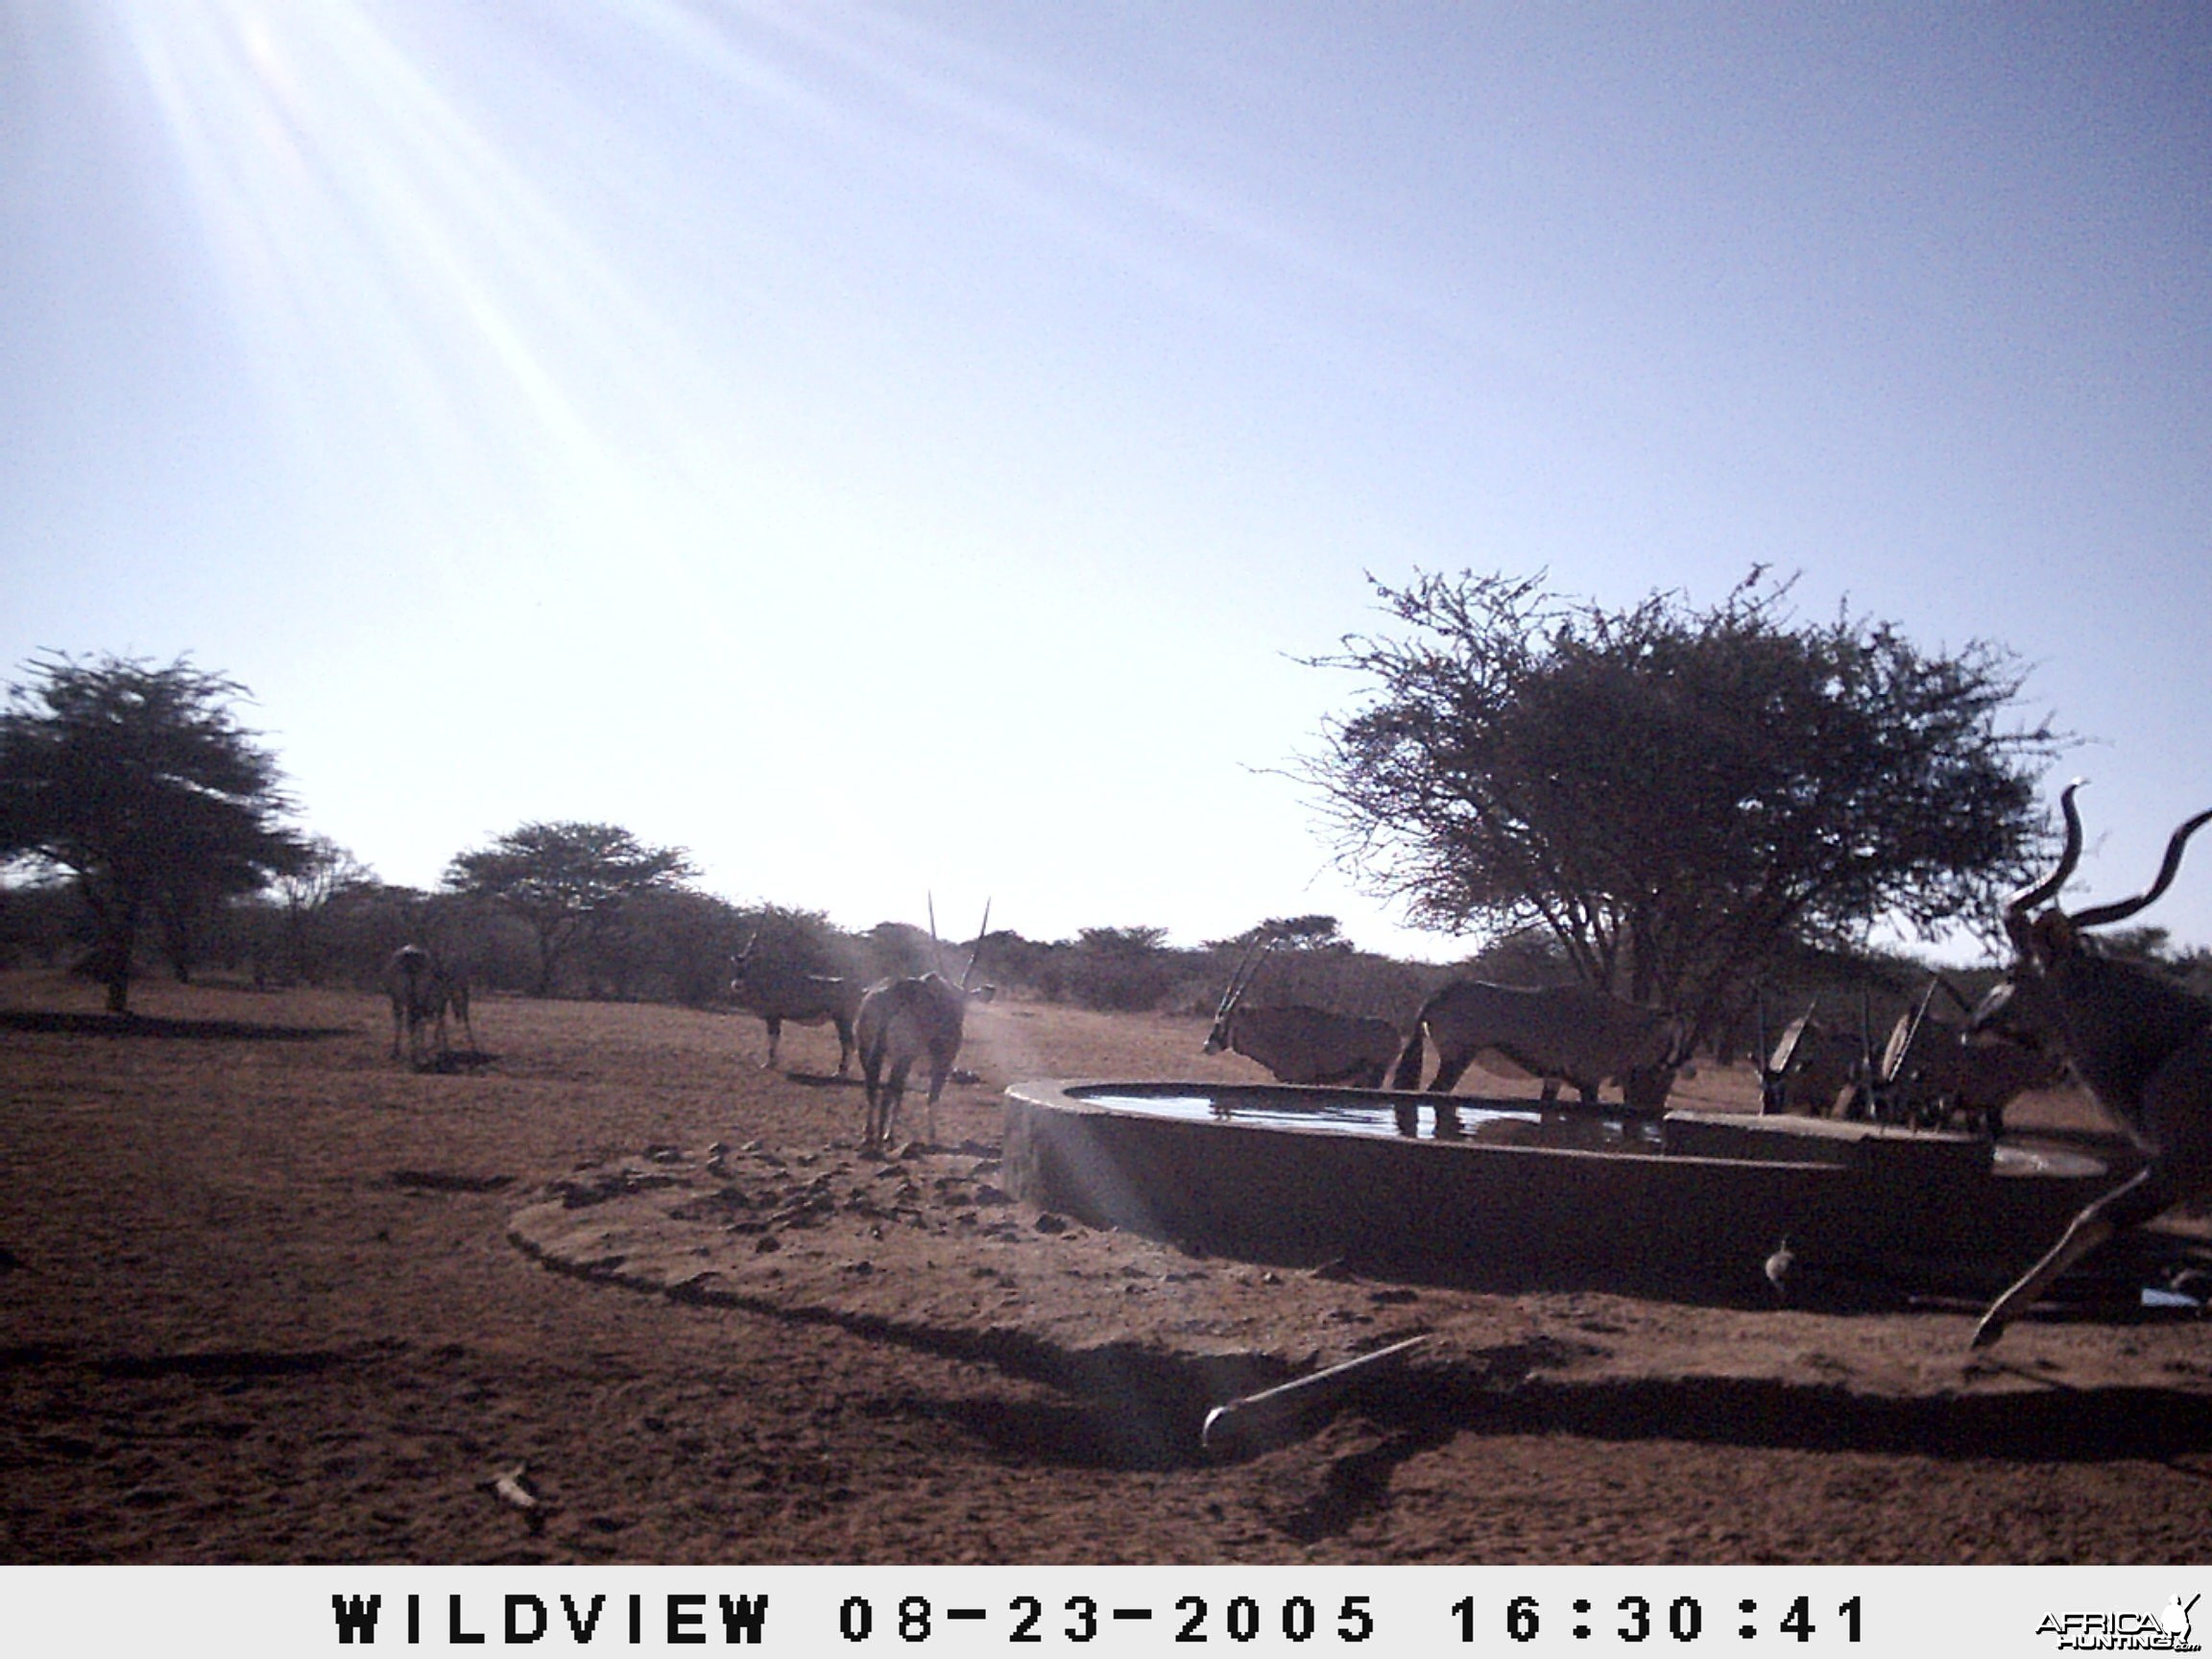 Gemsboks and Kudu, Namibia